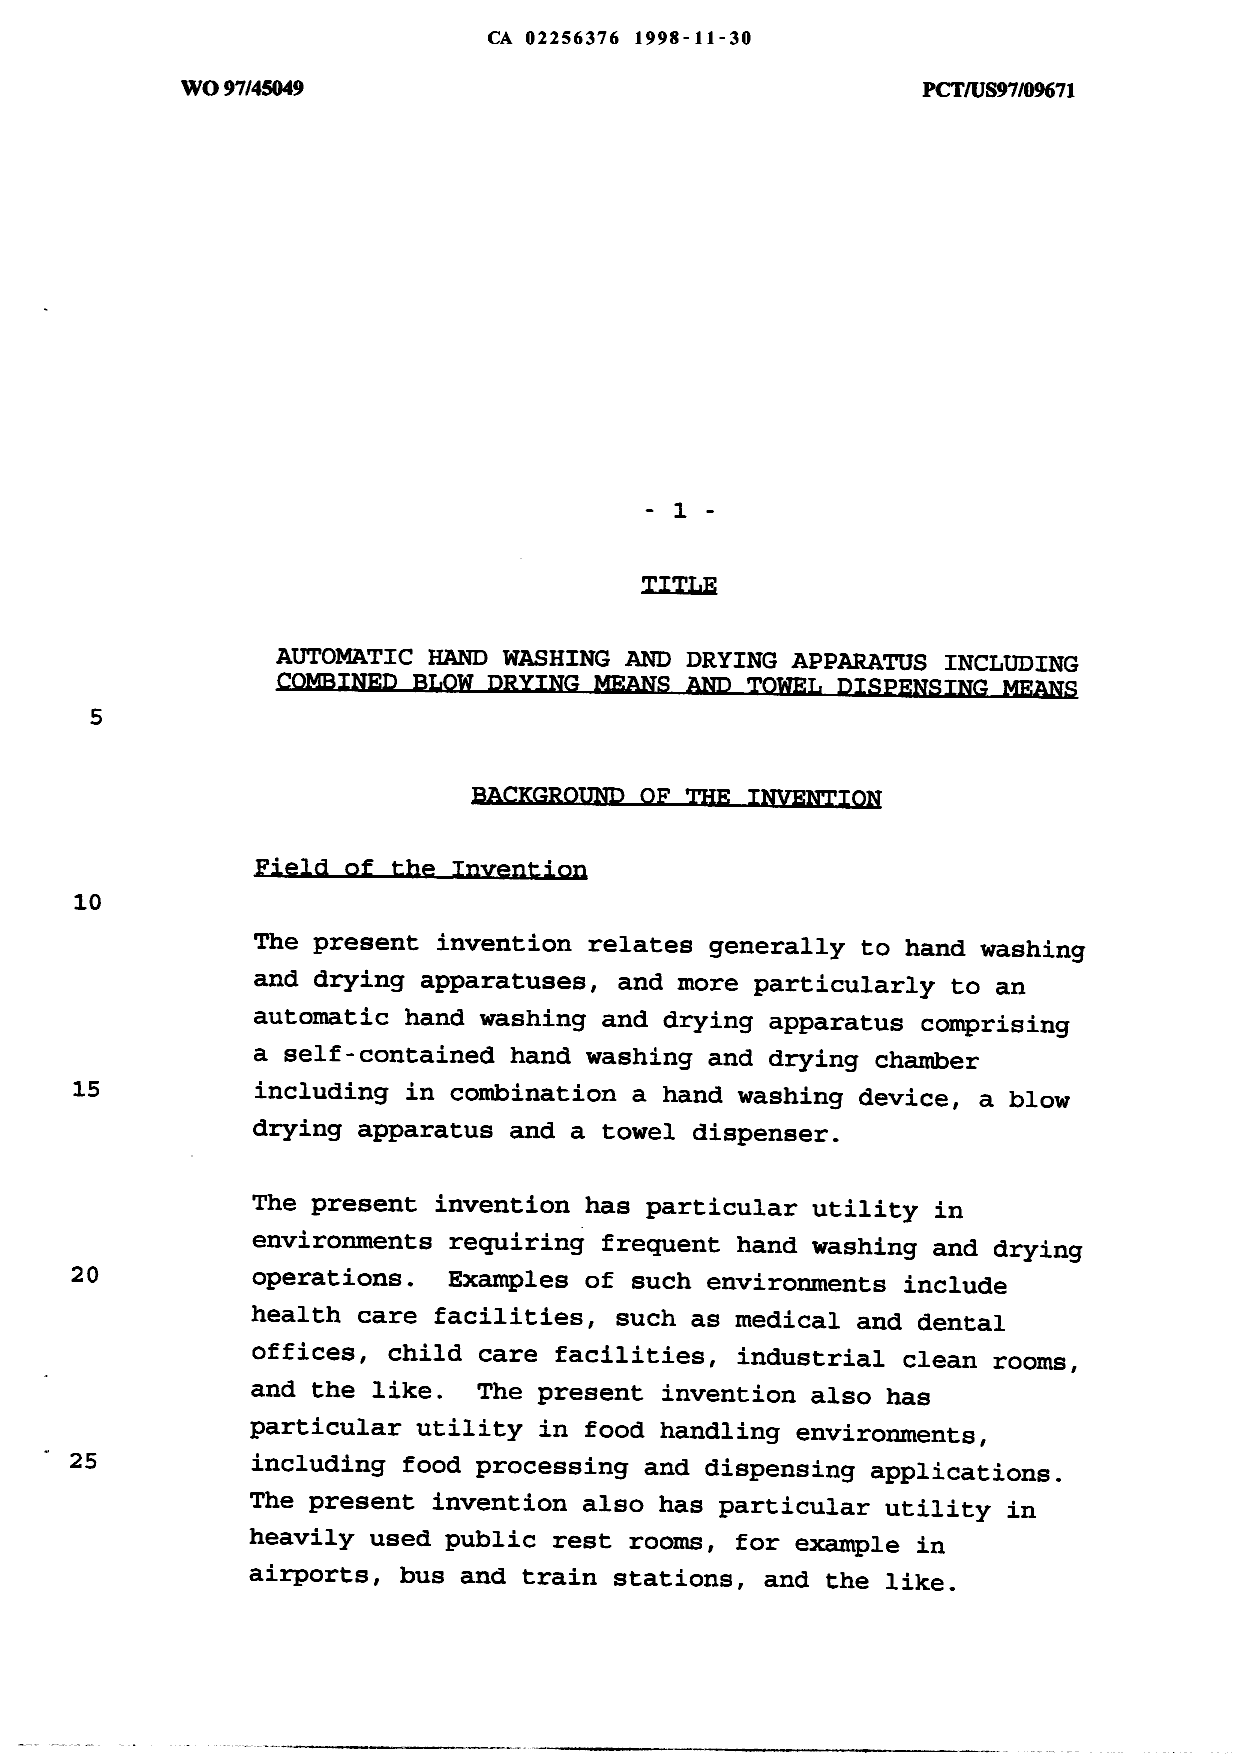 Canadian Patent Document 2256376. Description 19981130. Image 1 of 14